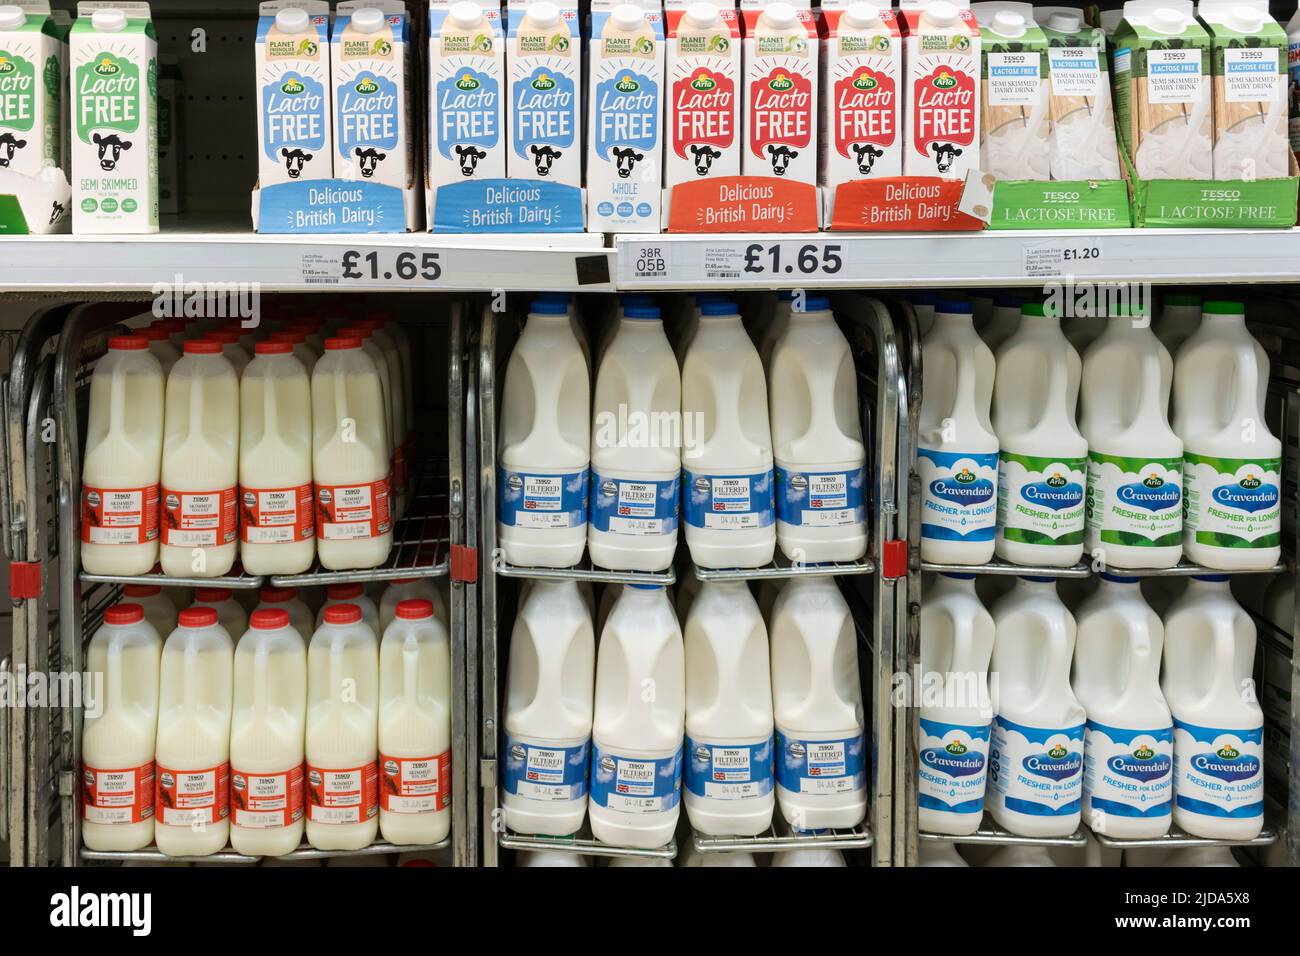 Supermarktregale mit regulärer Milchmilch in Kunststoffbehältern und laktosefreier Milch in Kartons bei Tesco, einem britischen Supermarkt Stockfoto